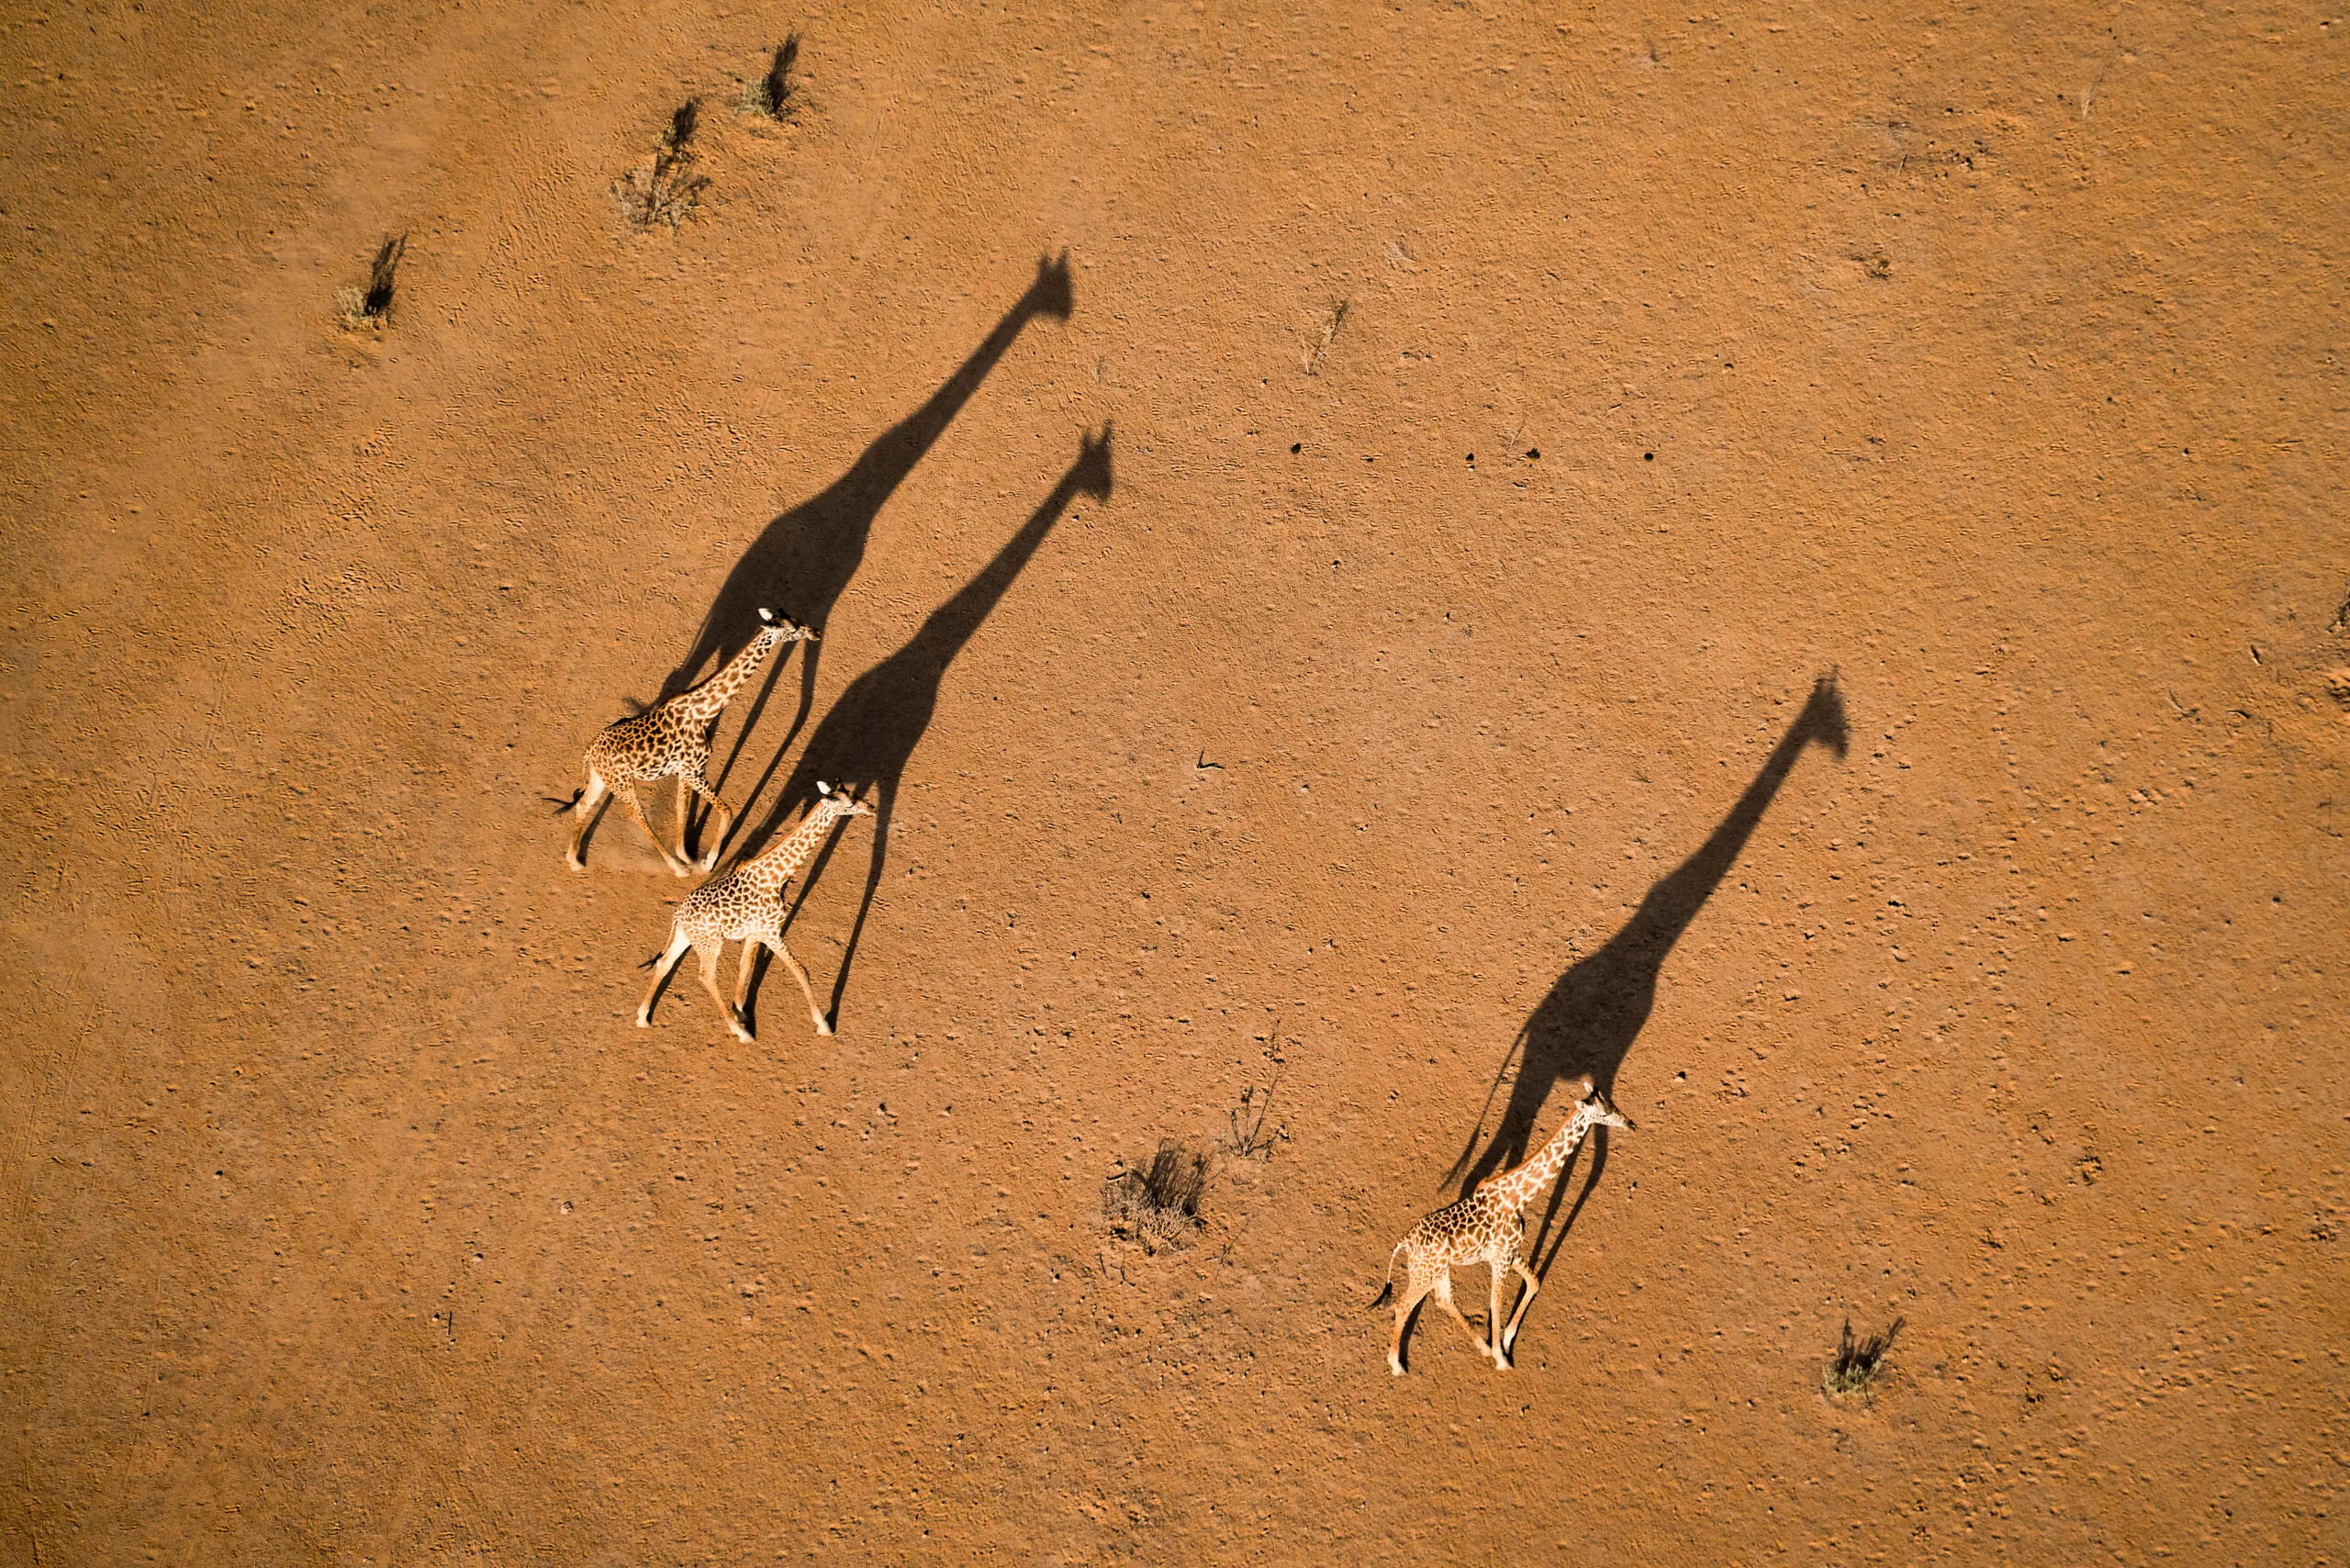 Wandbild (5636) Walking under Sunset von John Fan präsentiert: Tiere,Landschaften,Afrika,Wüste,Luftaufnahmen,Sonstige Tiere,Wildtiere,Aus Afrika